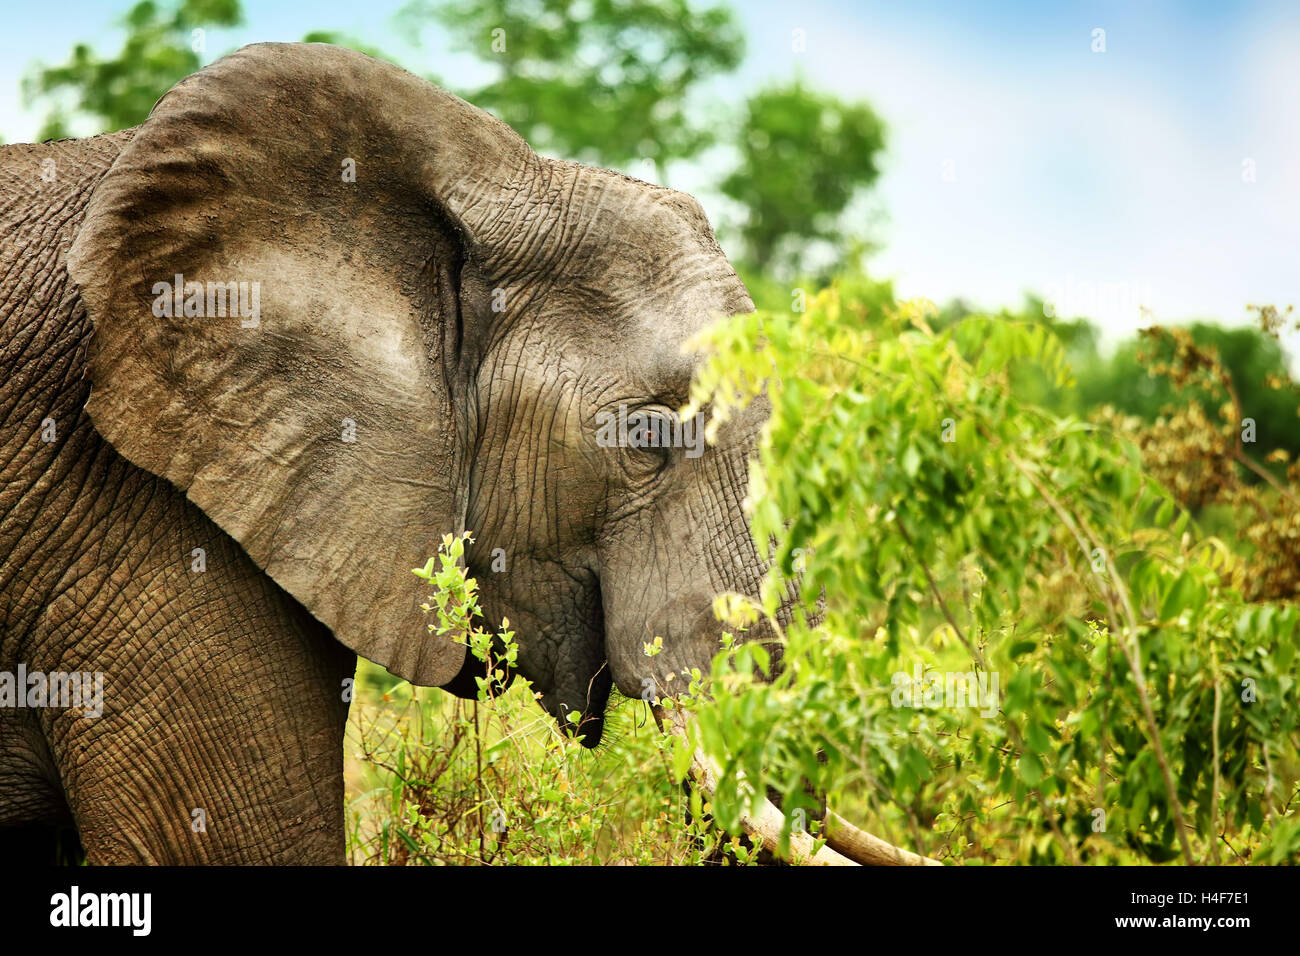 Vista lateral de un bello retrato elefante comiendo las hojas del árbol, Big Wild Animal safari, juego duro, los viajes y el turismo ecológico Foto de stock